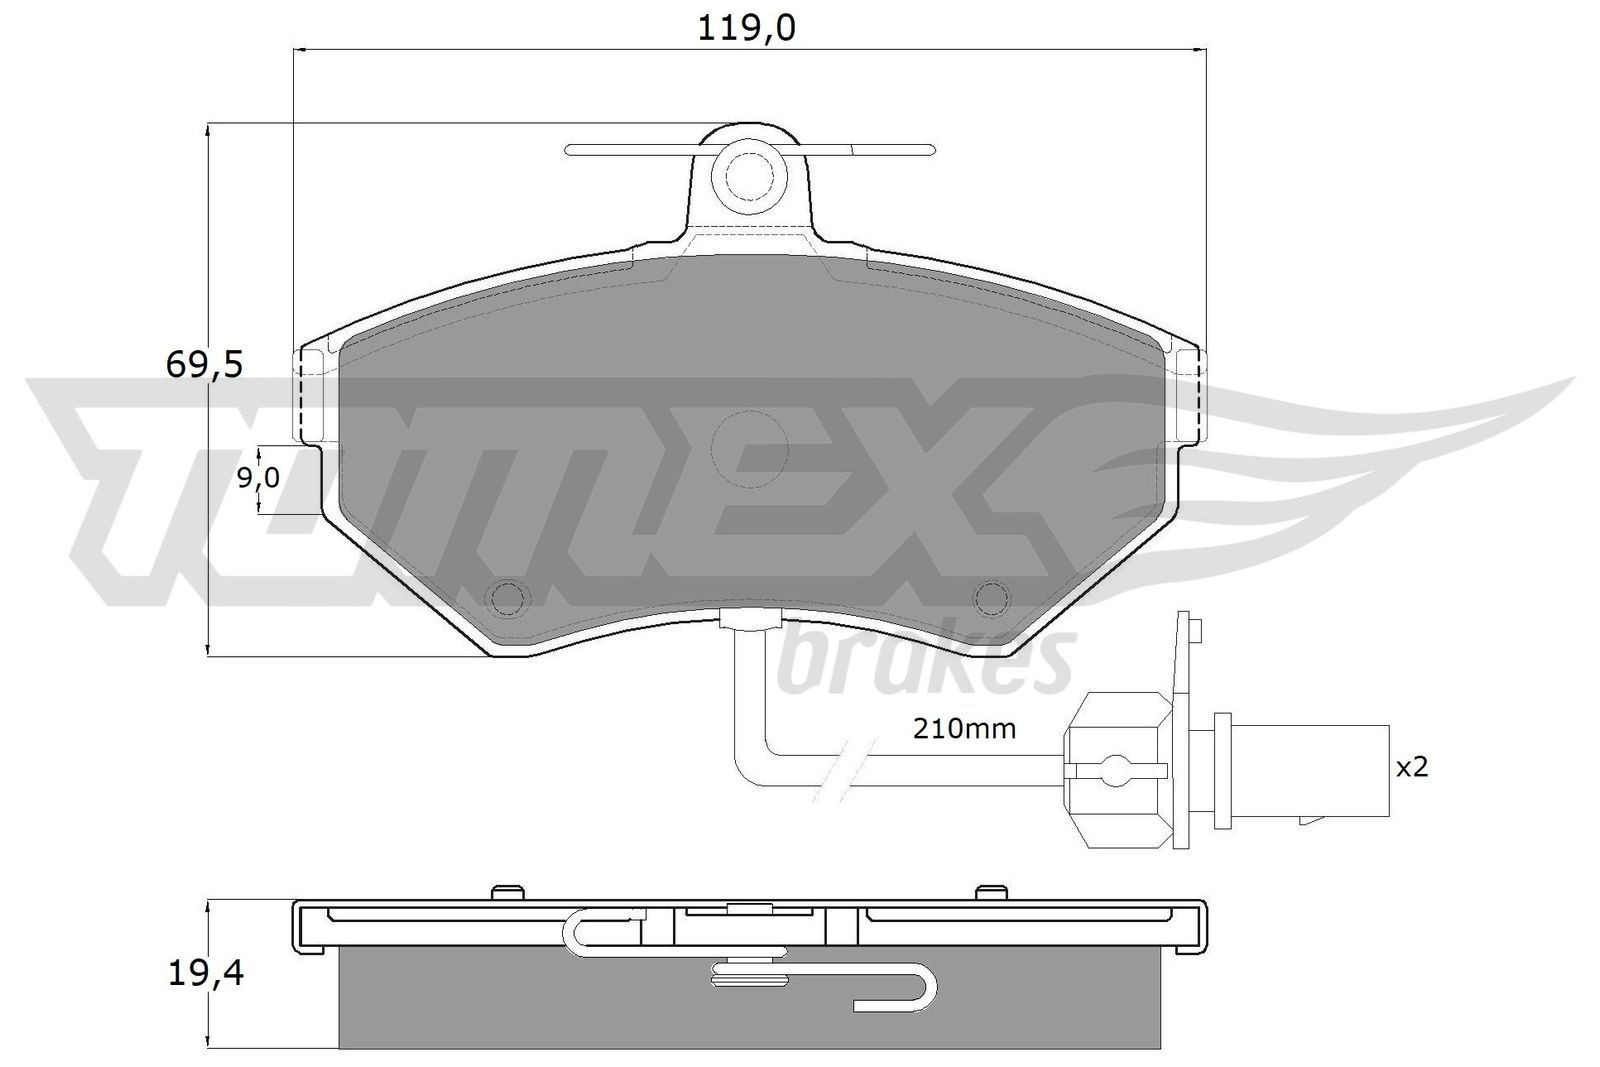 TOMEX brakes Bremsbelagsatz TX 13-121